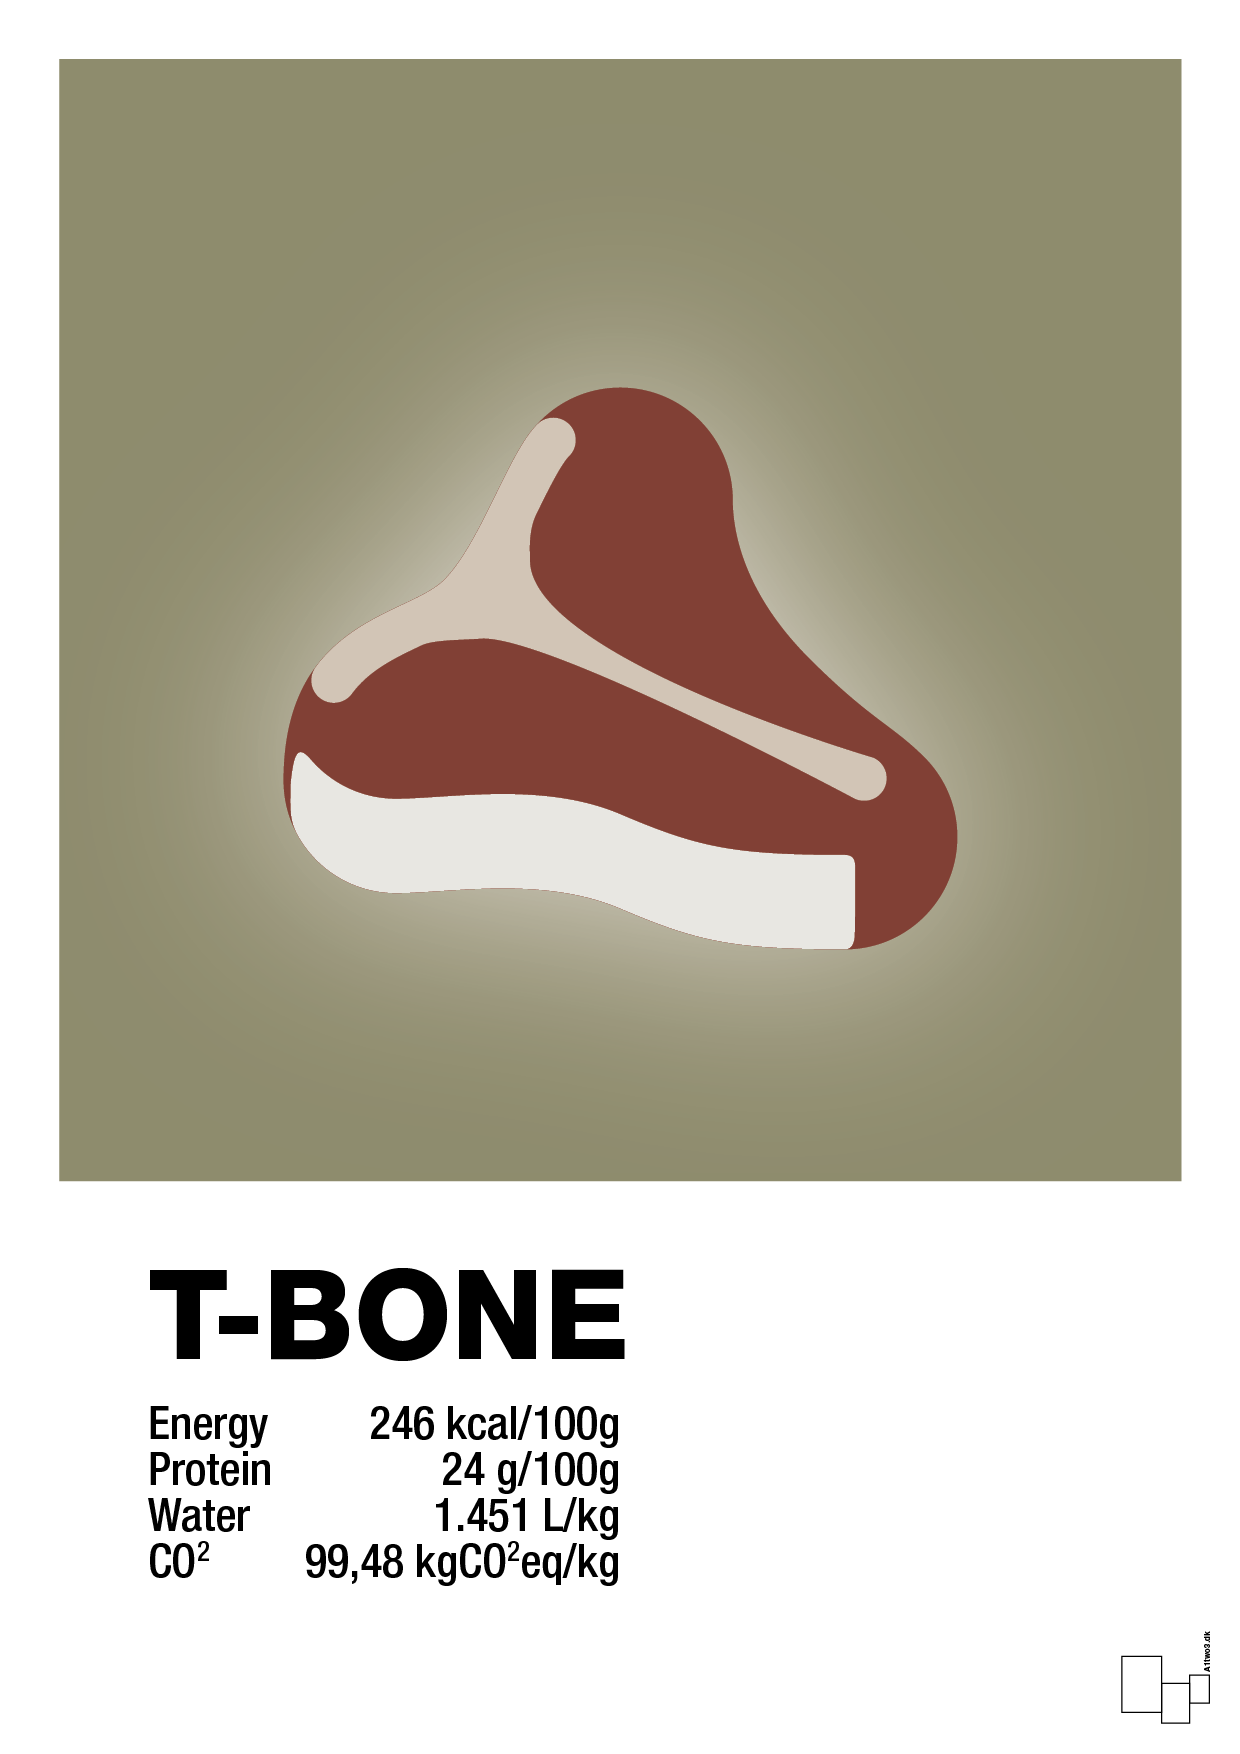 t-bone nutrition og miljø - Plakat med Mad & Drikke i Misty Forrest